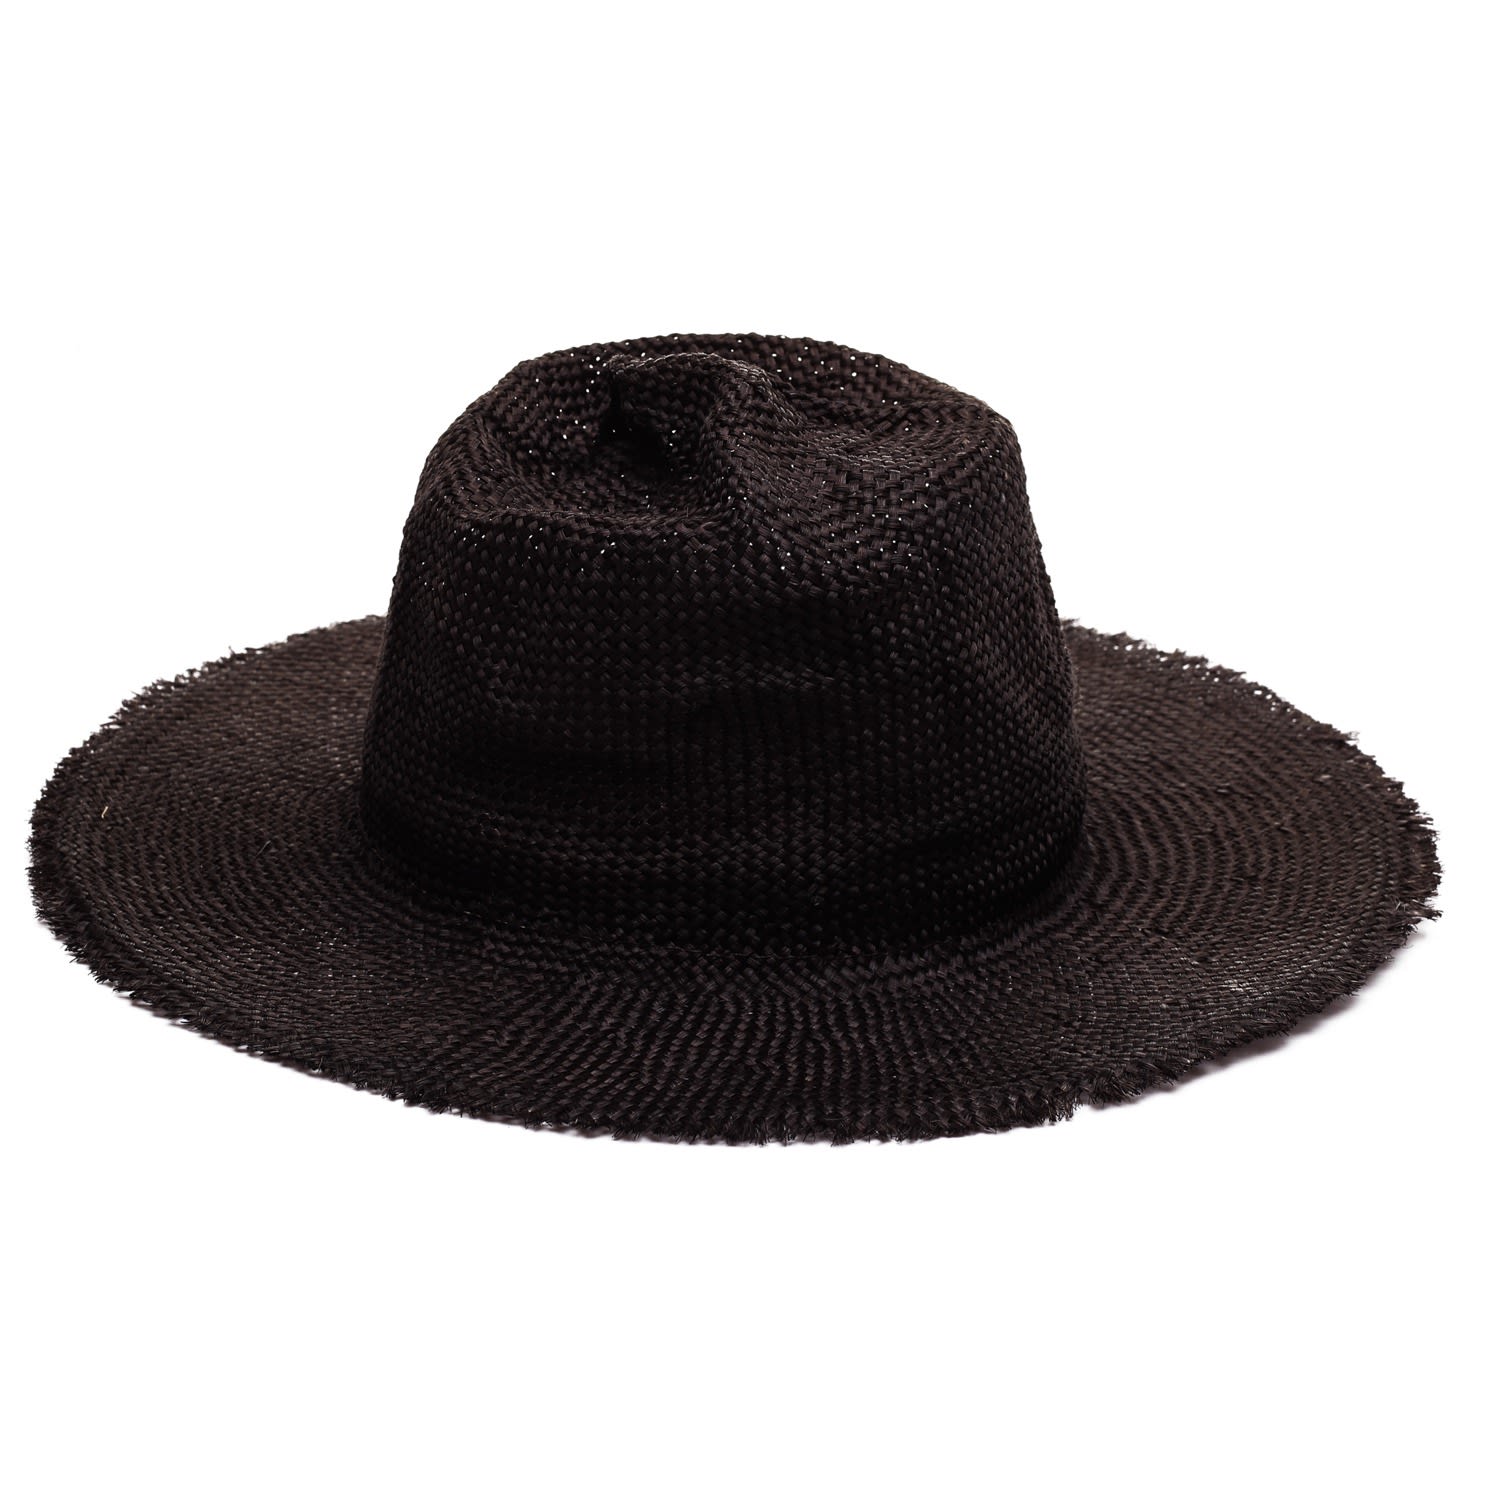 Men’s Black Remi Straw Hat Small Justine Hats